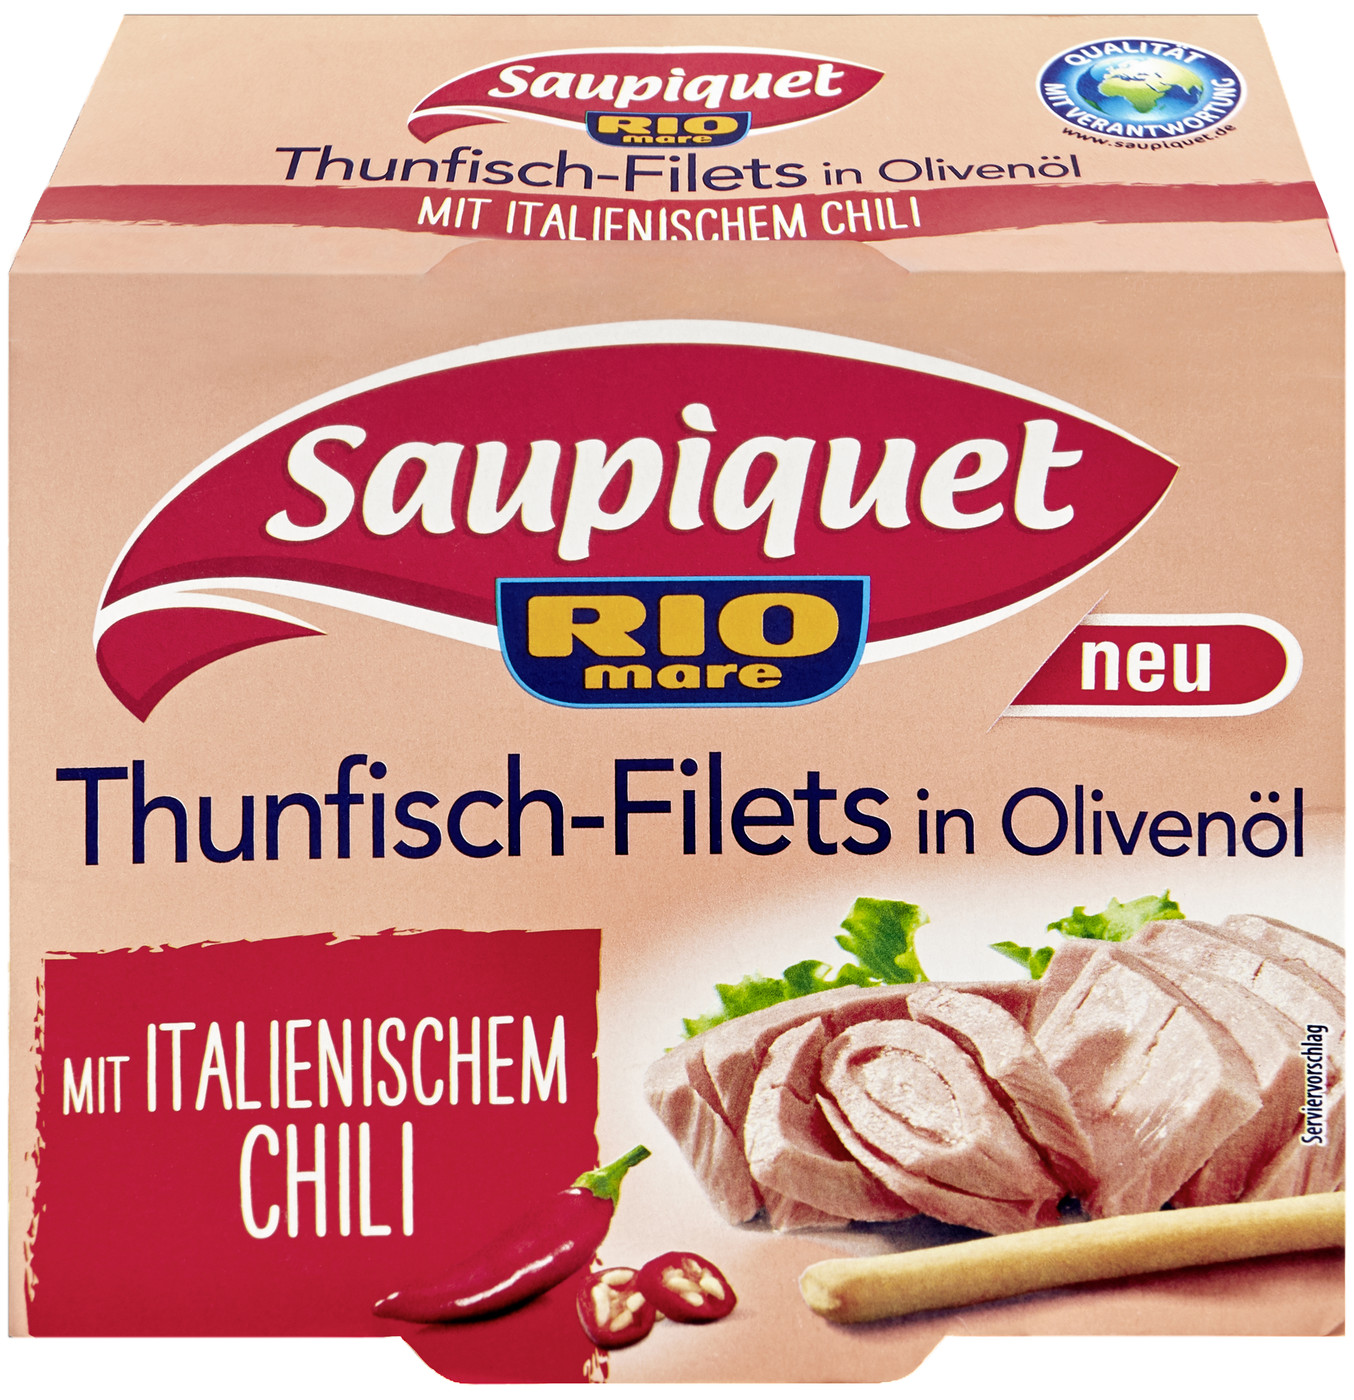 Saupiquet Thunfisch-Filets in Olivenöl mit italienischem Chili 130G